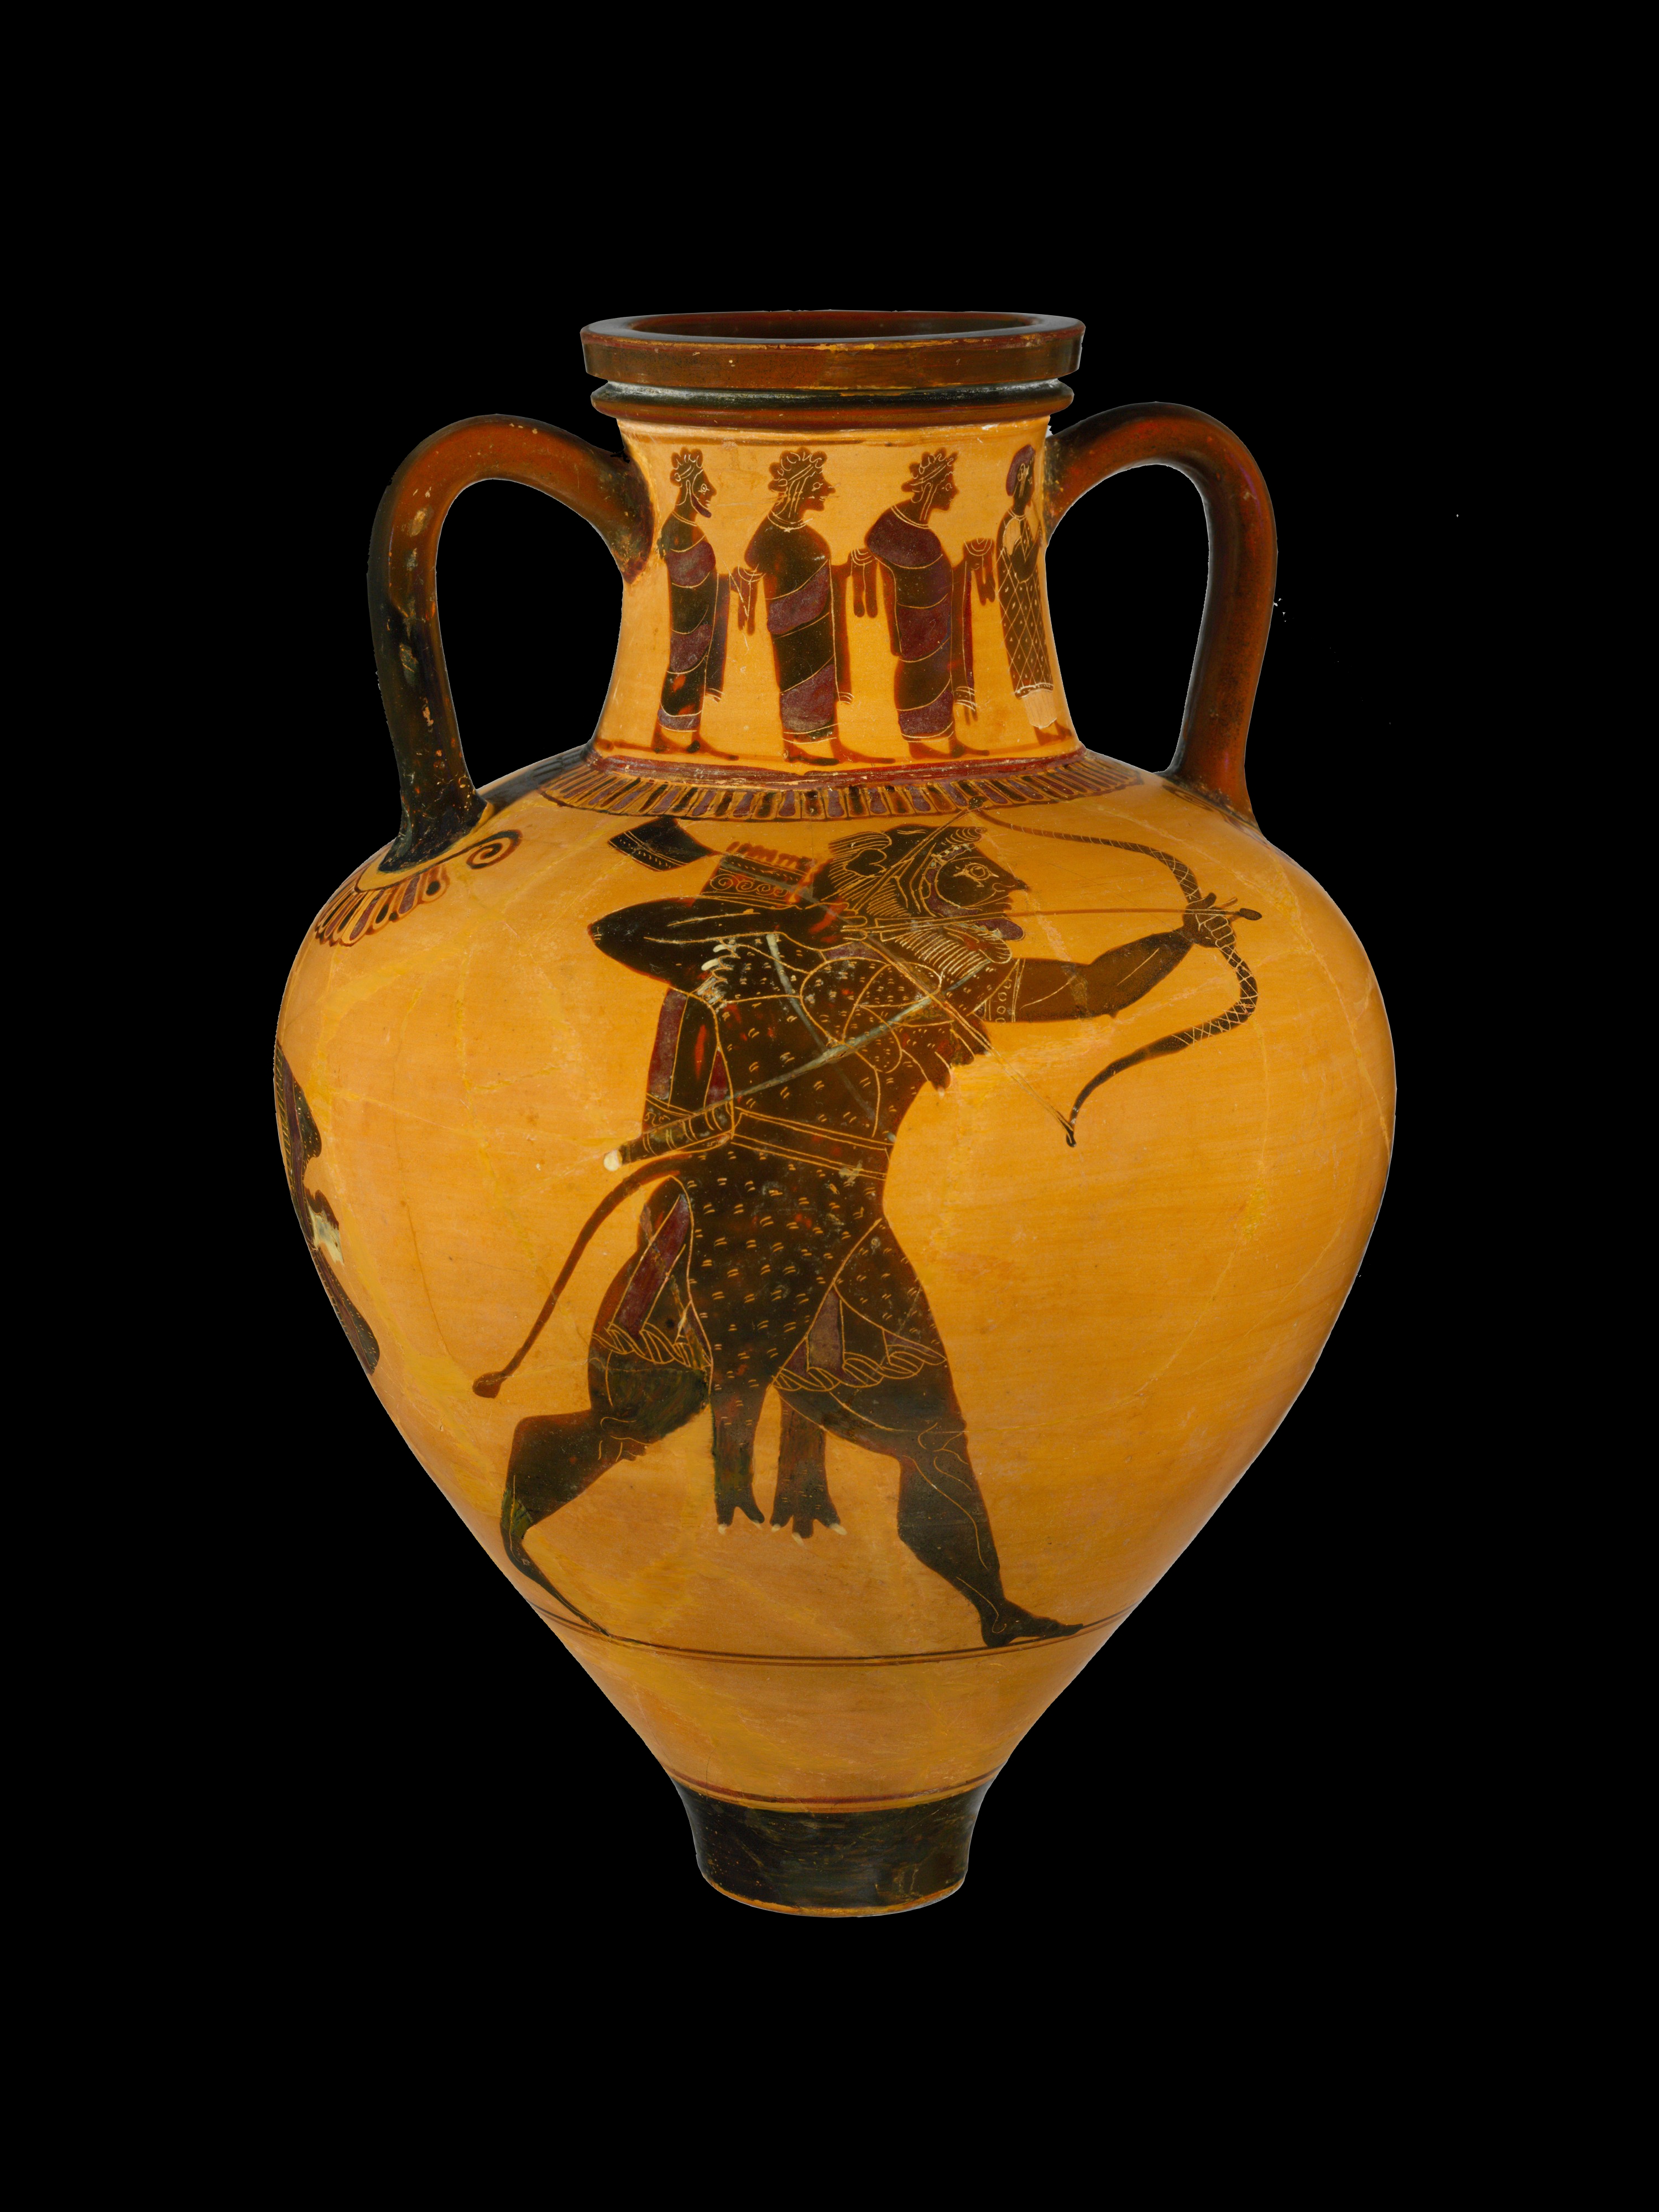 Terracotta Neck Amphora (jar) c.530 BC